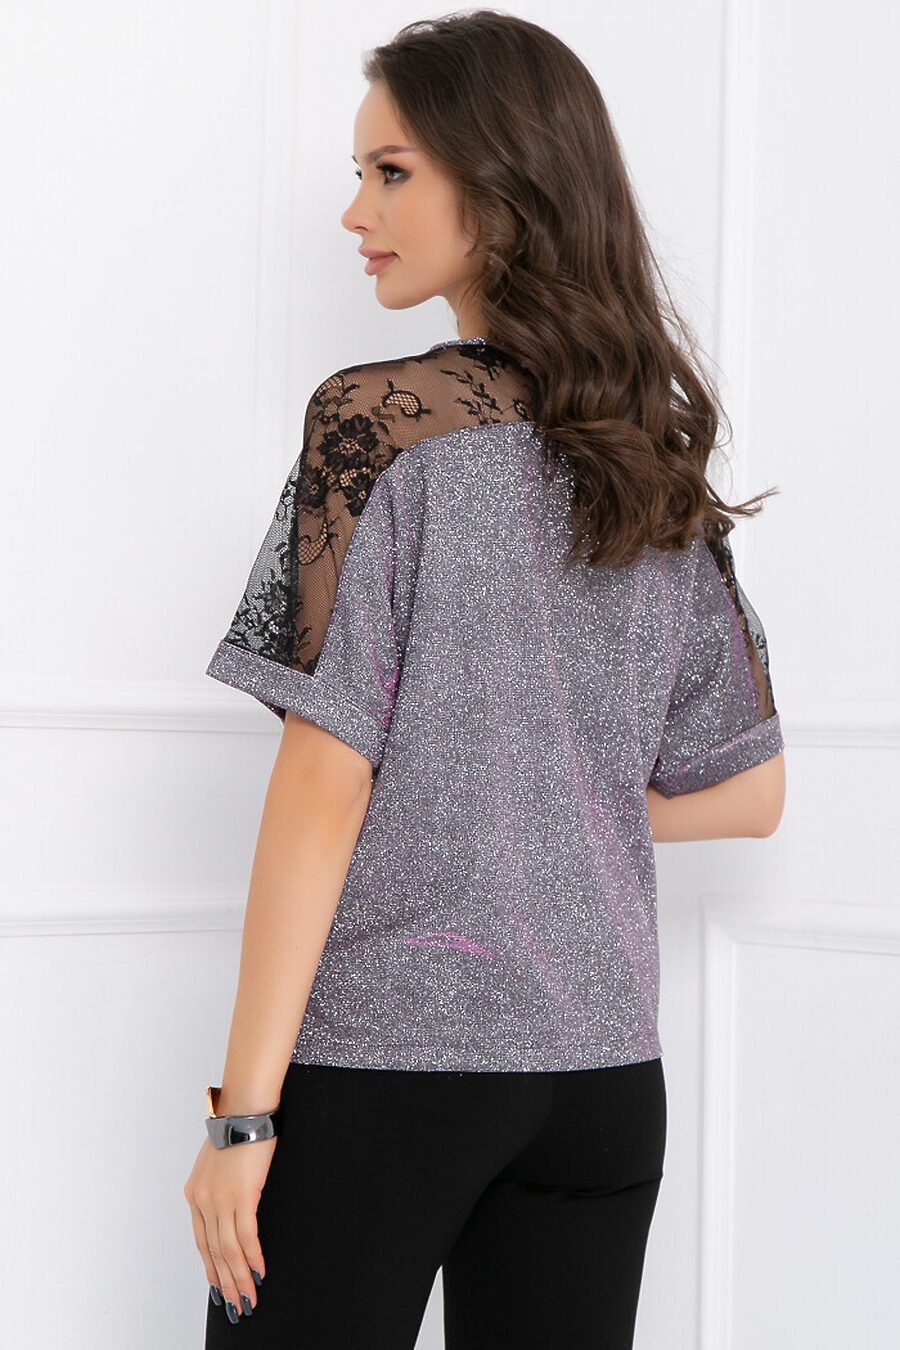 Блуза BELLOVERA (822941), купить в Moyo.moda